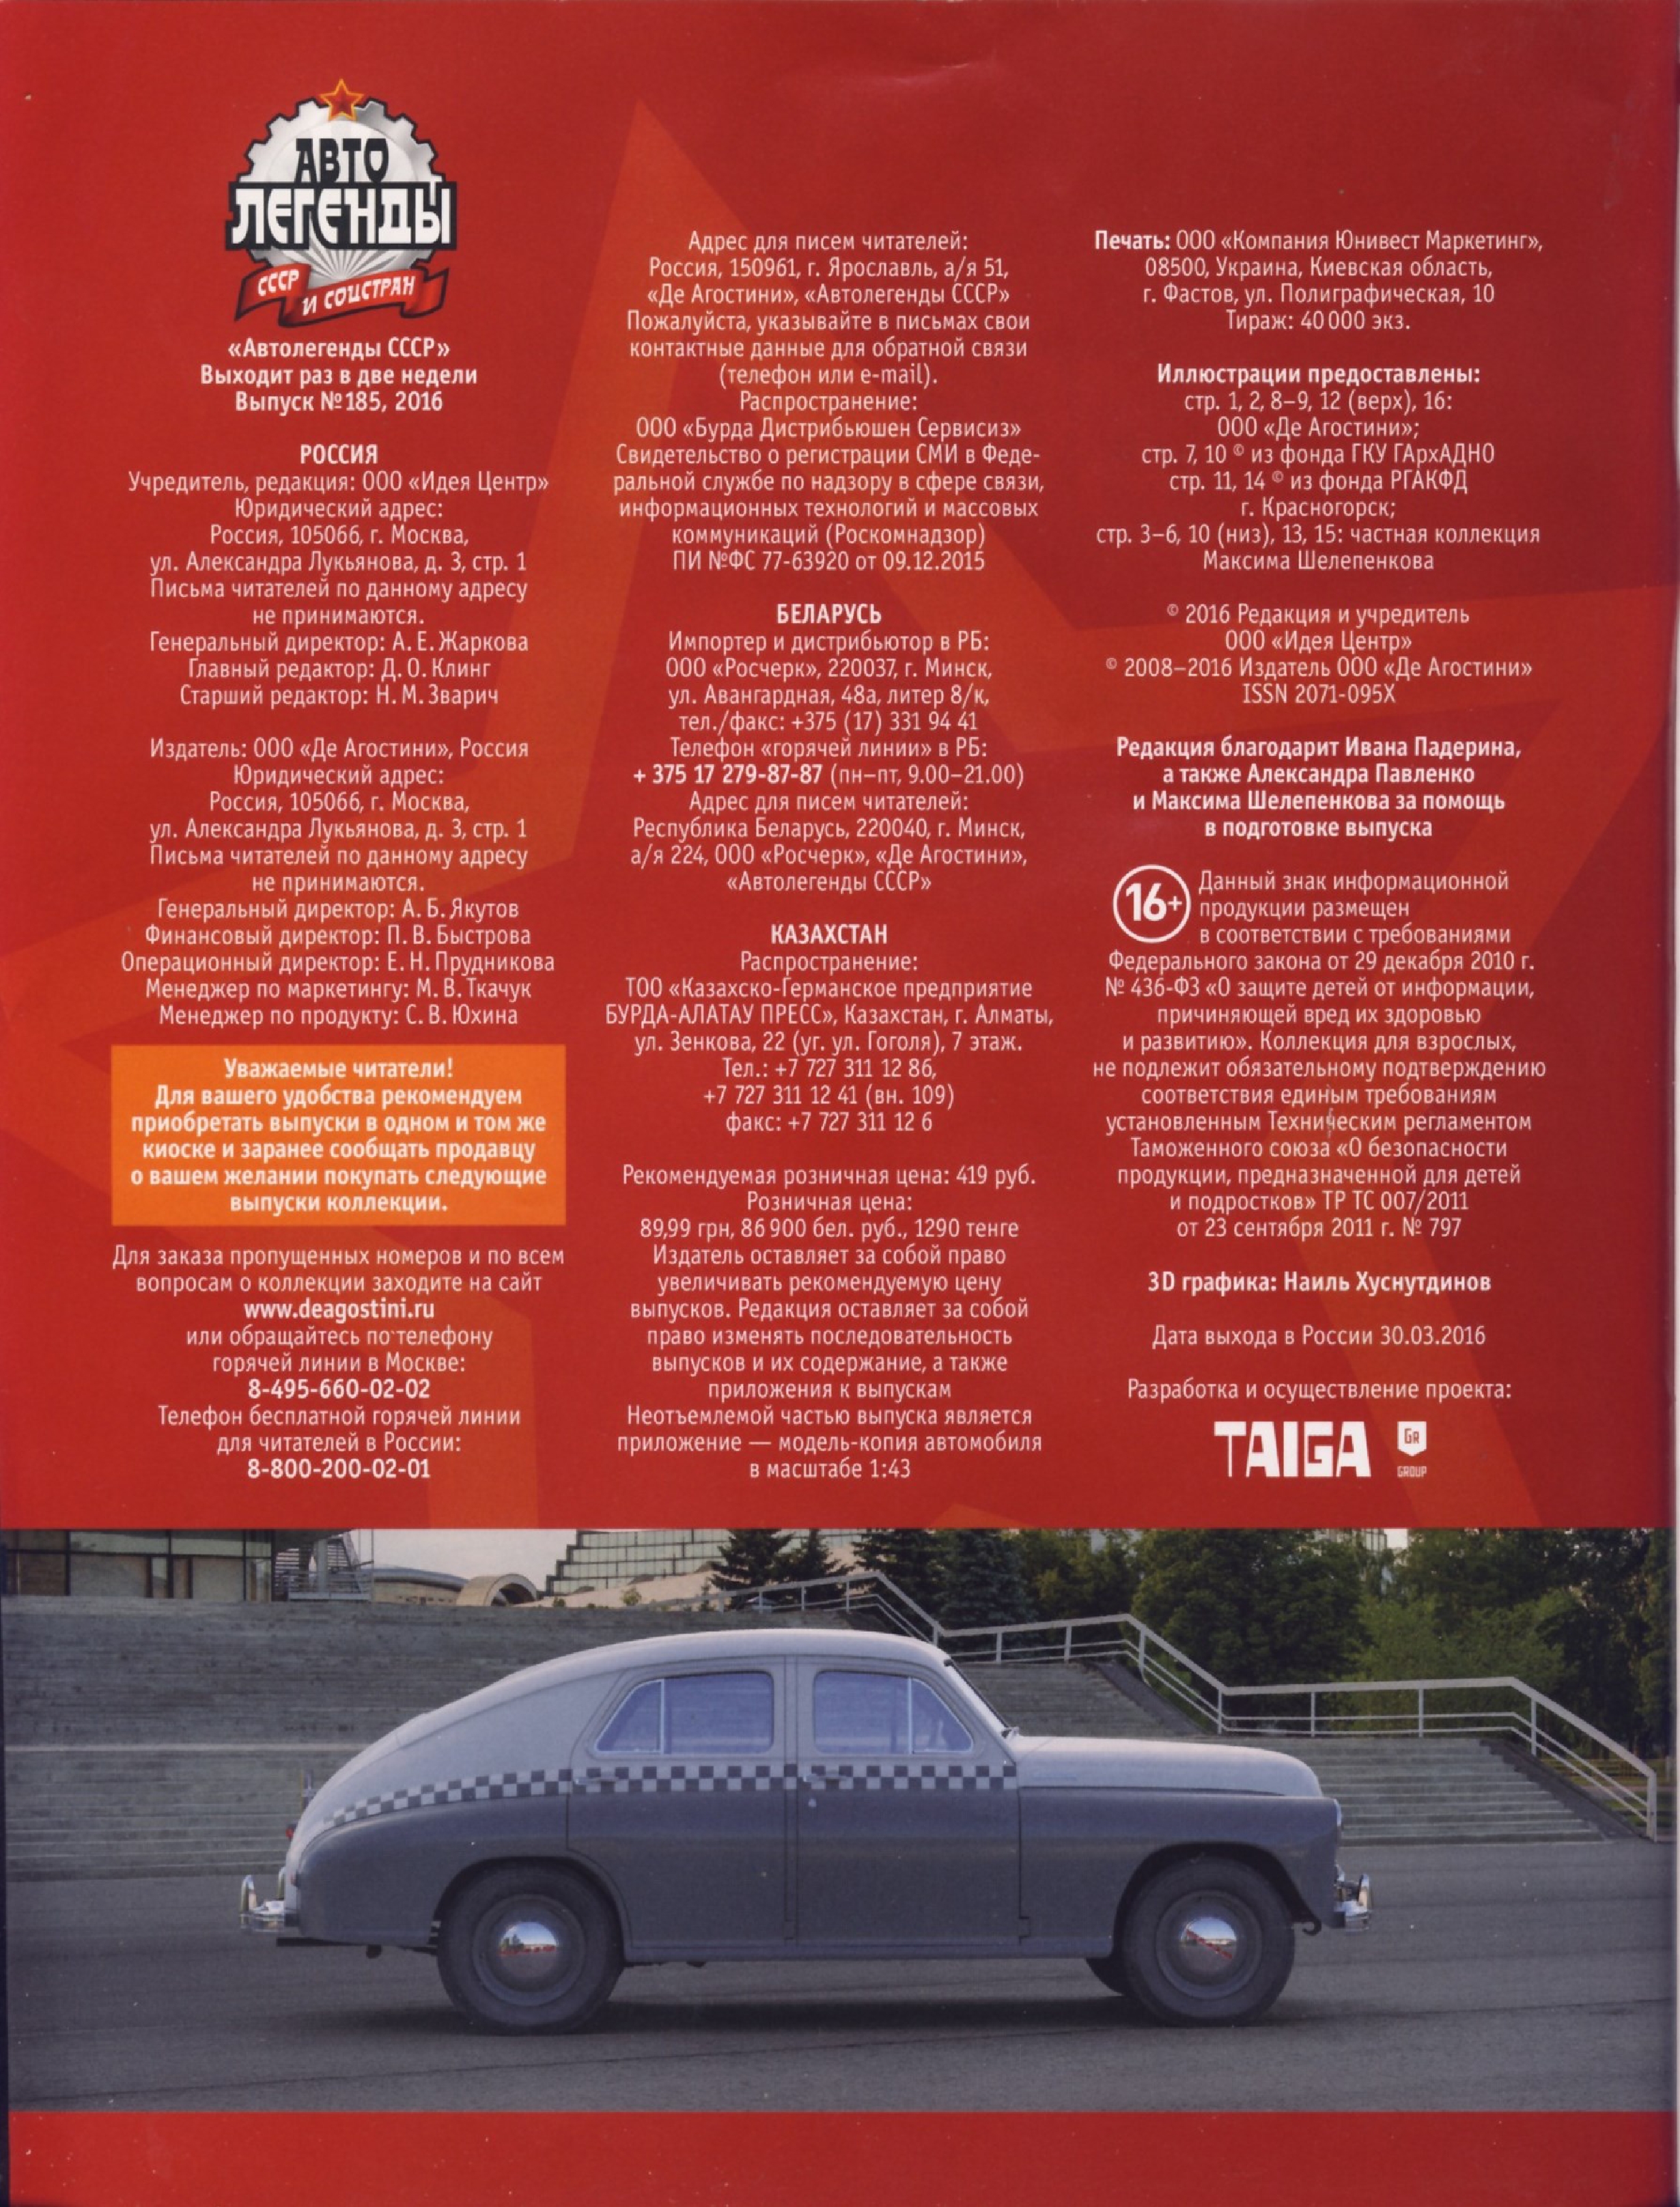 Automobile legend CCCP 185 GAZ M20 VICTORY.pdf